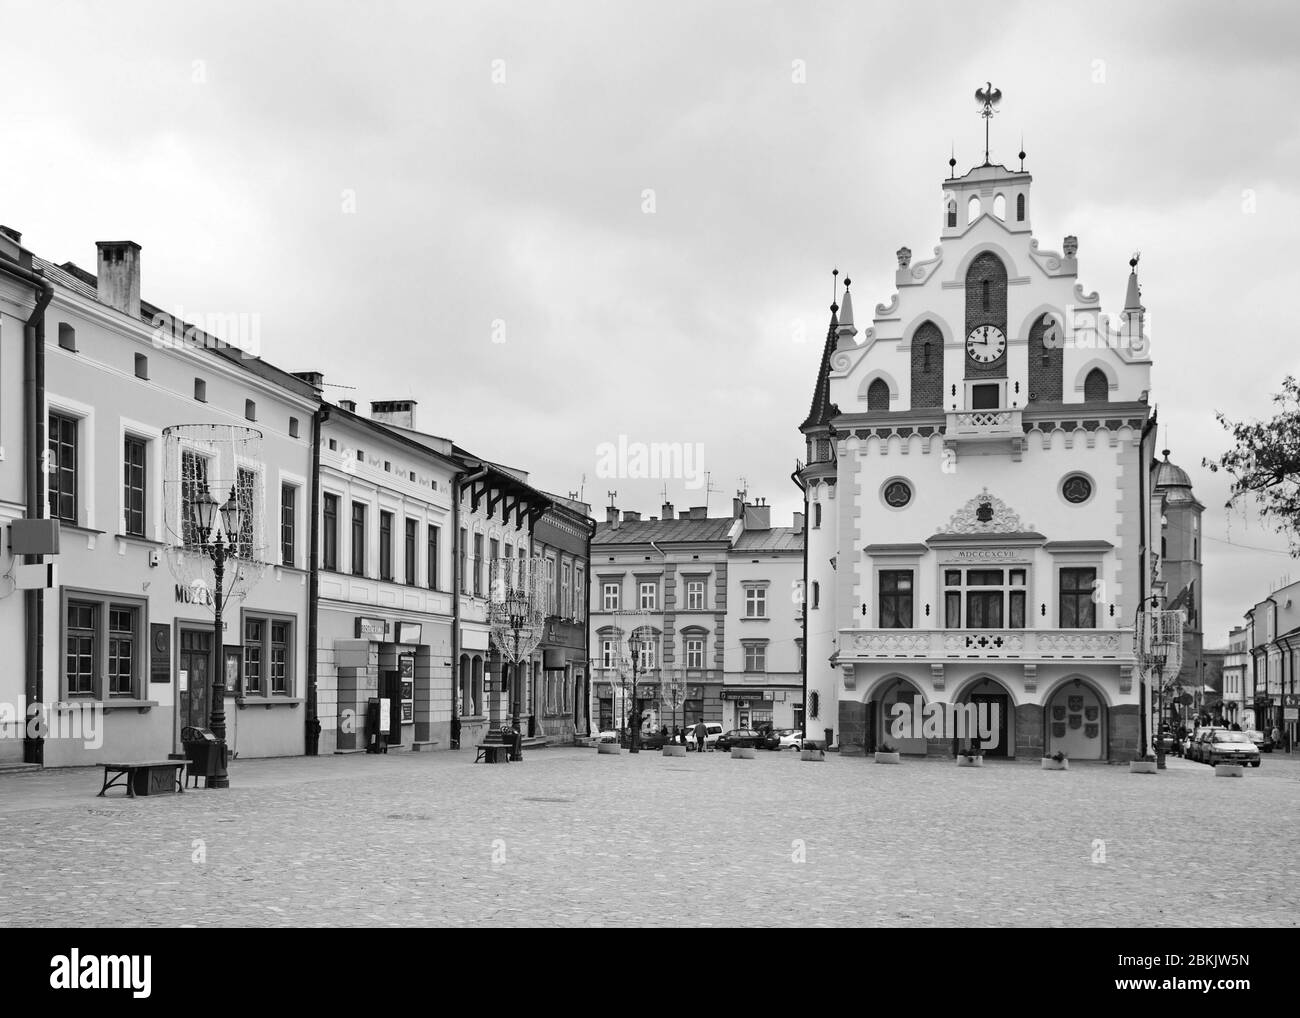 City hall in Rzeszow. Poland Stock Photo